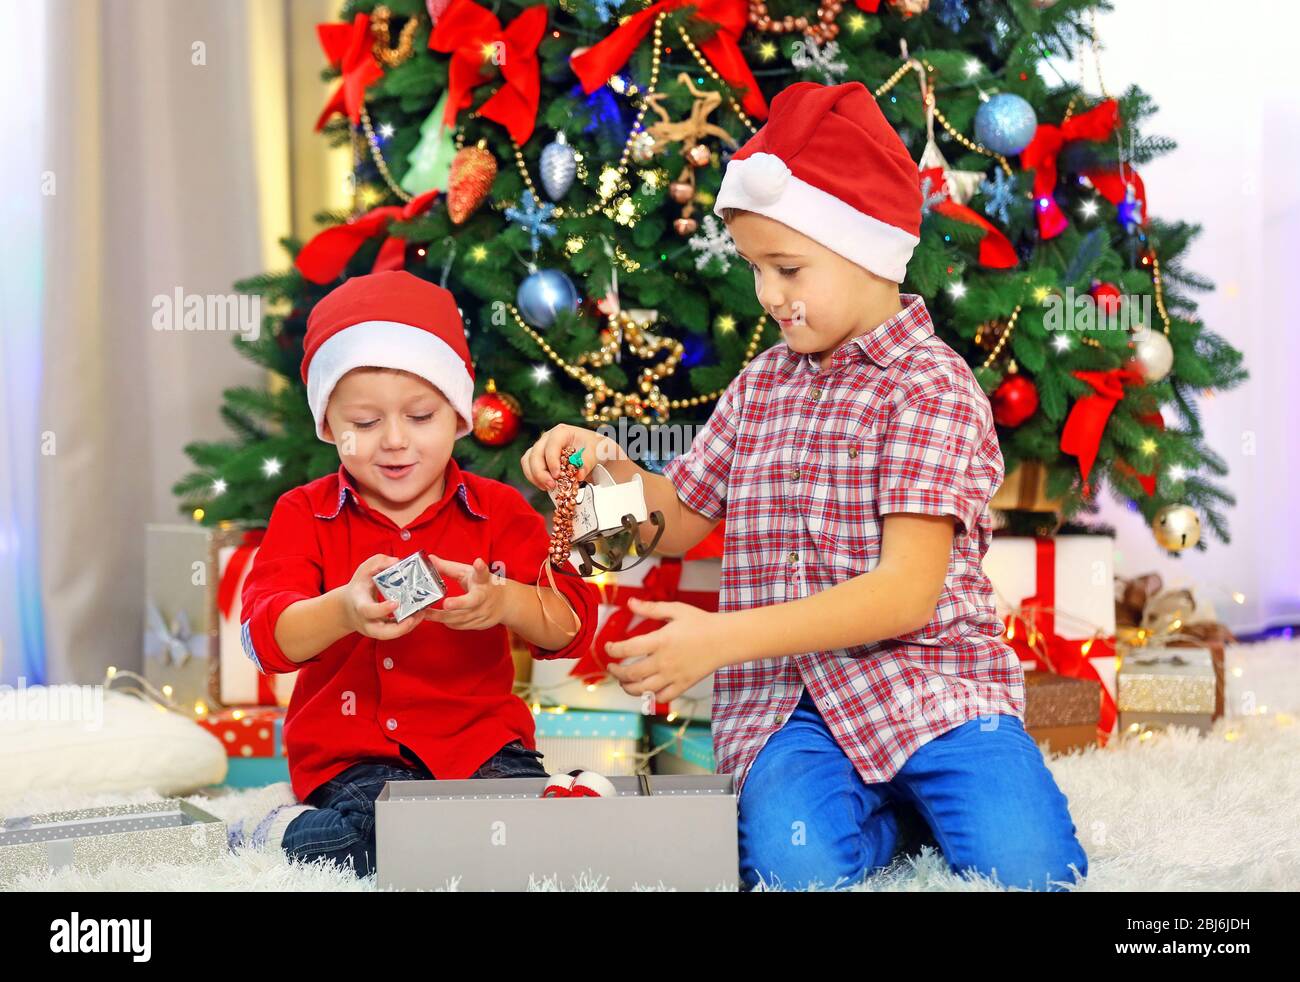 Regali Natale Carini.Due Carini Fratelli Piccoli Regali Di Apertura Su Sfondo Decorazione Di Natale Foto Stock Alamy